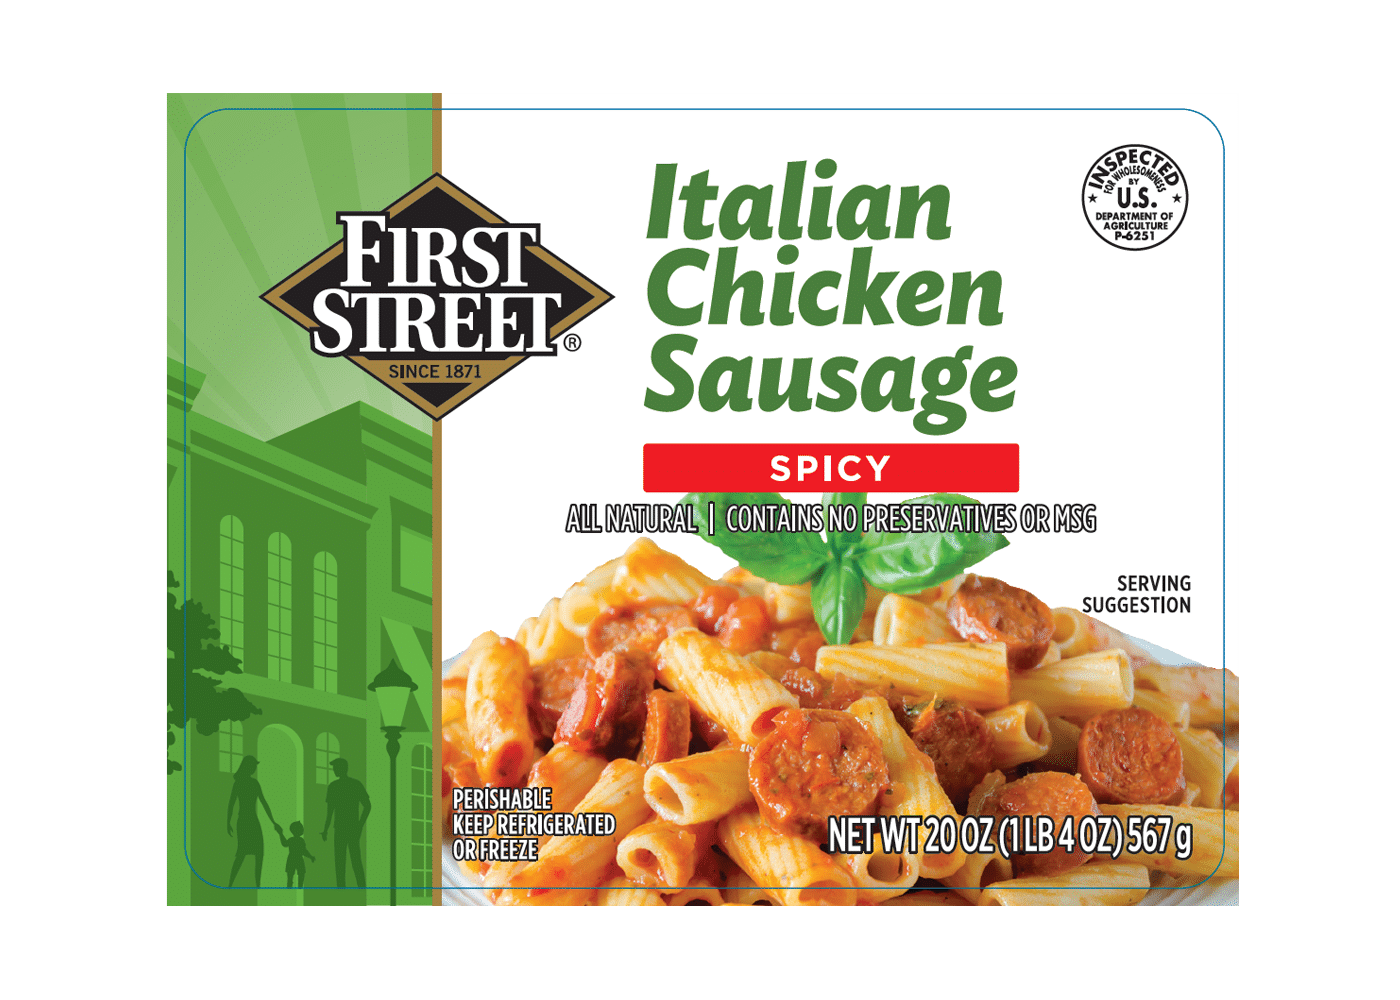 First Street Spicy Italian Chicken Sausage